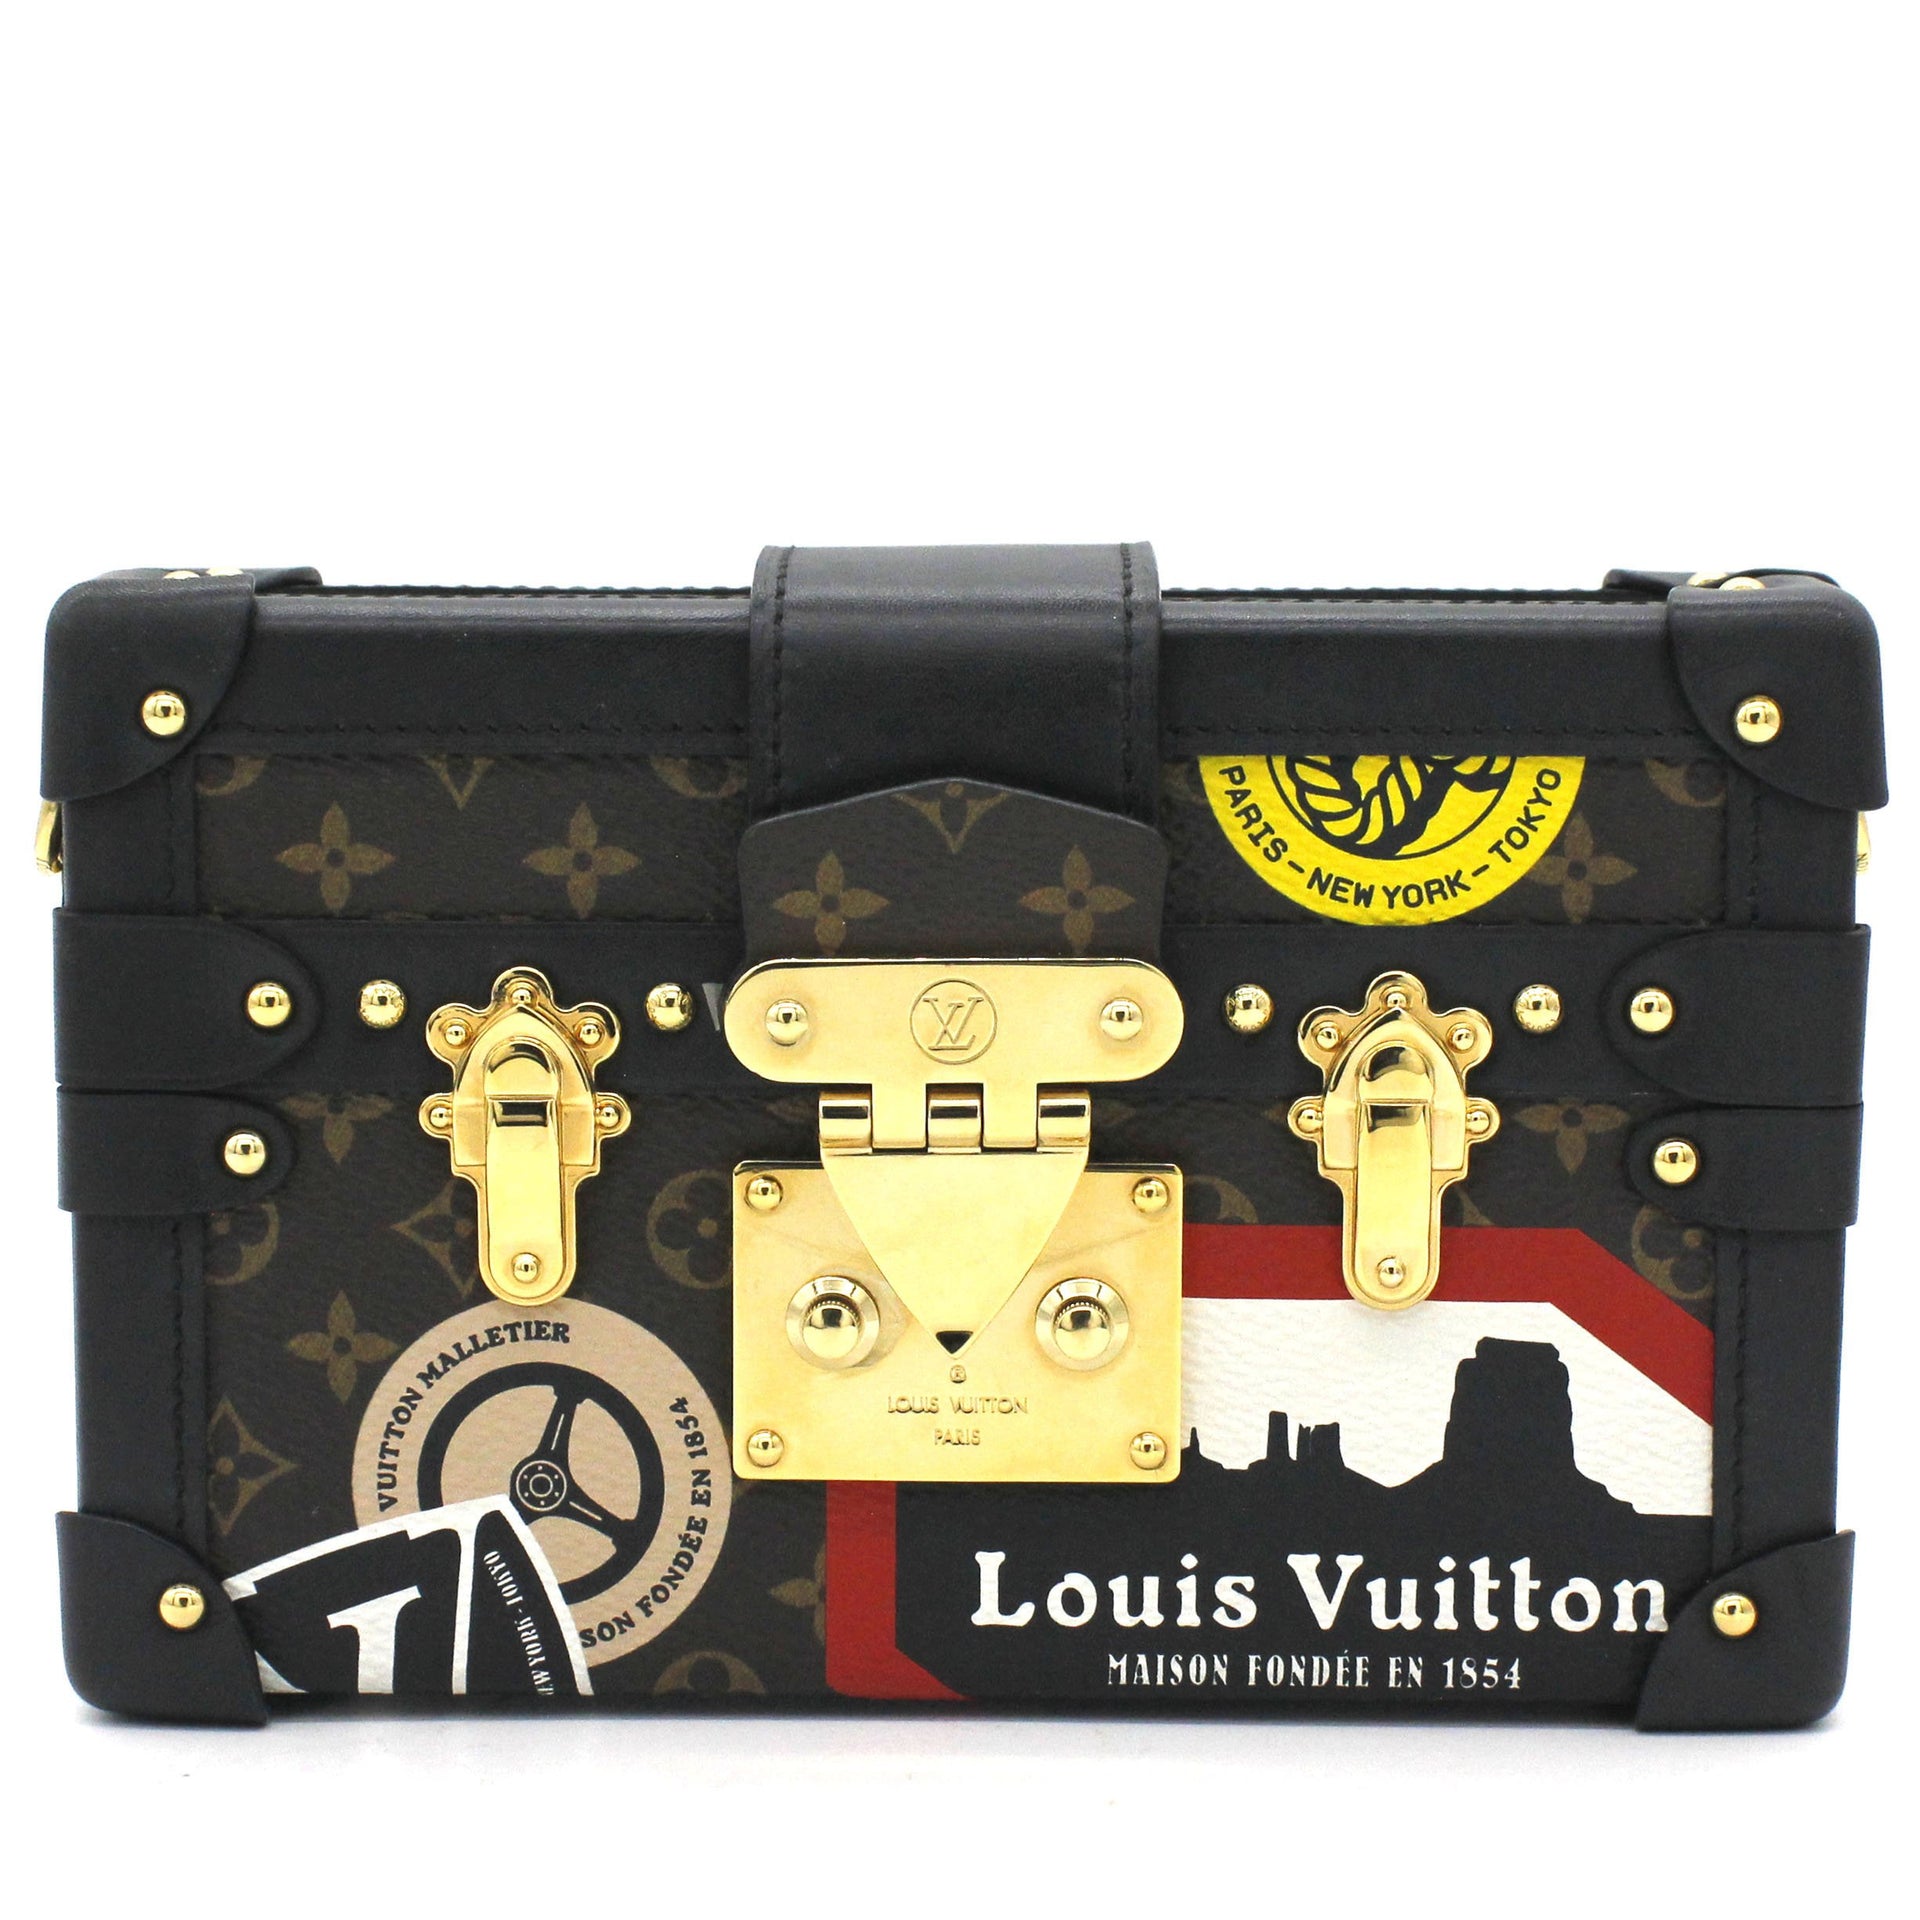 LOUIS VUITTON Petite Malle Soft Black/Red Shoulder Bag - Reems Closet